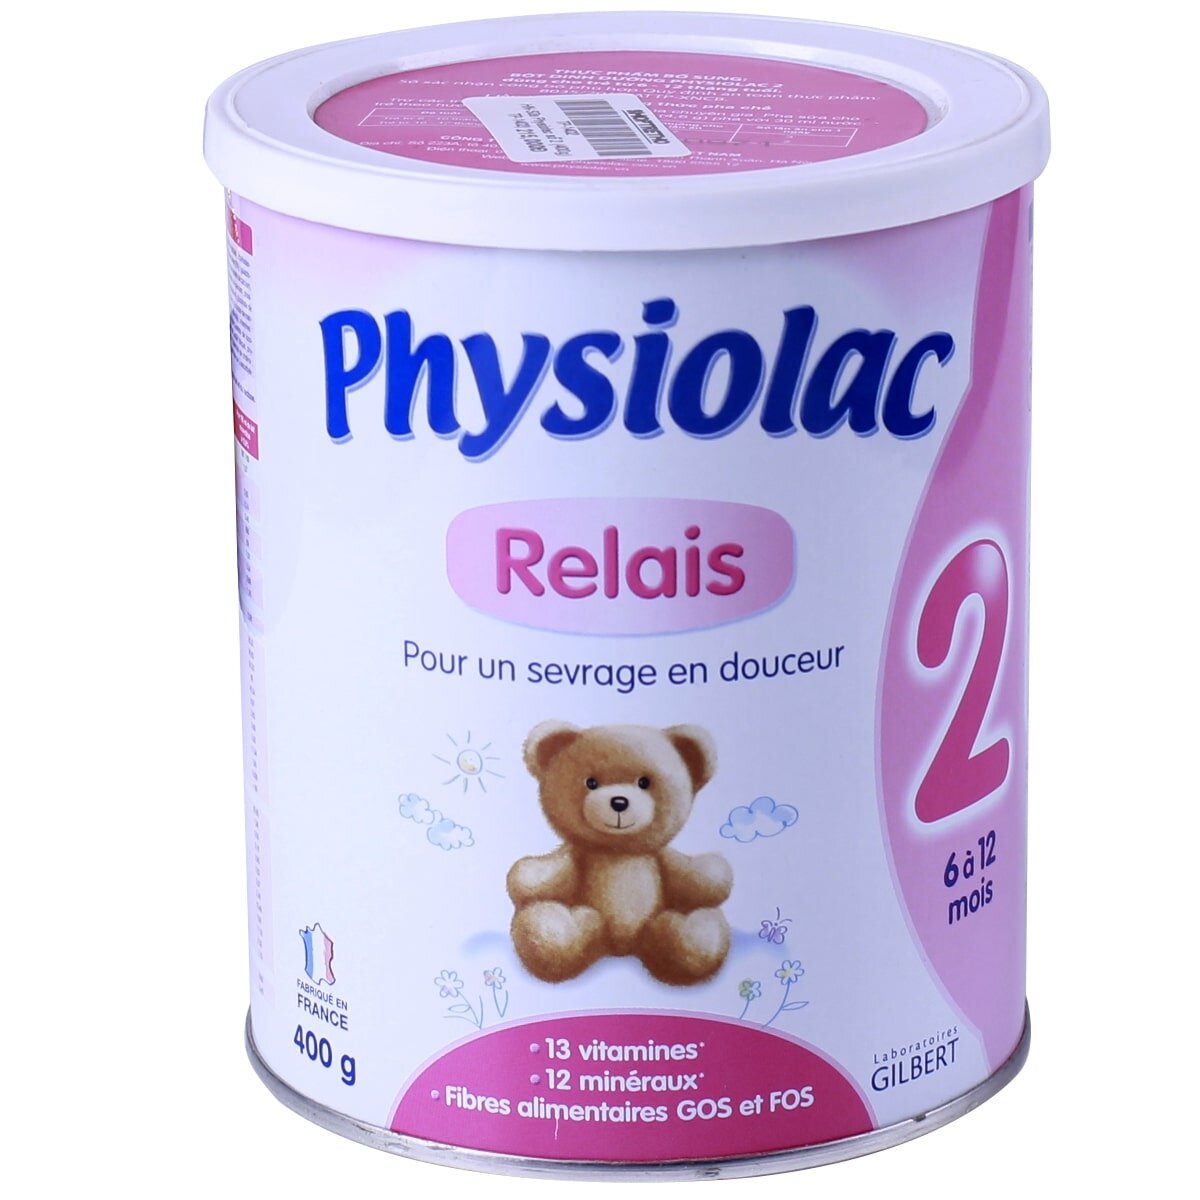 Sữa Physiolac số 2